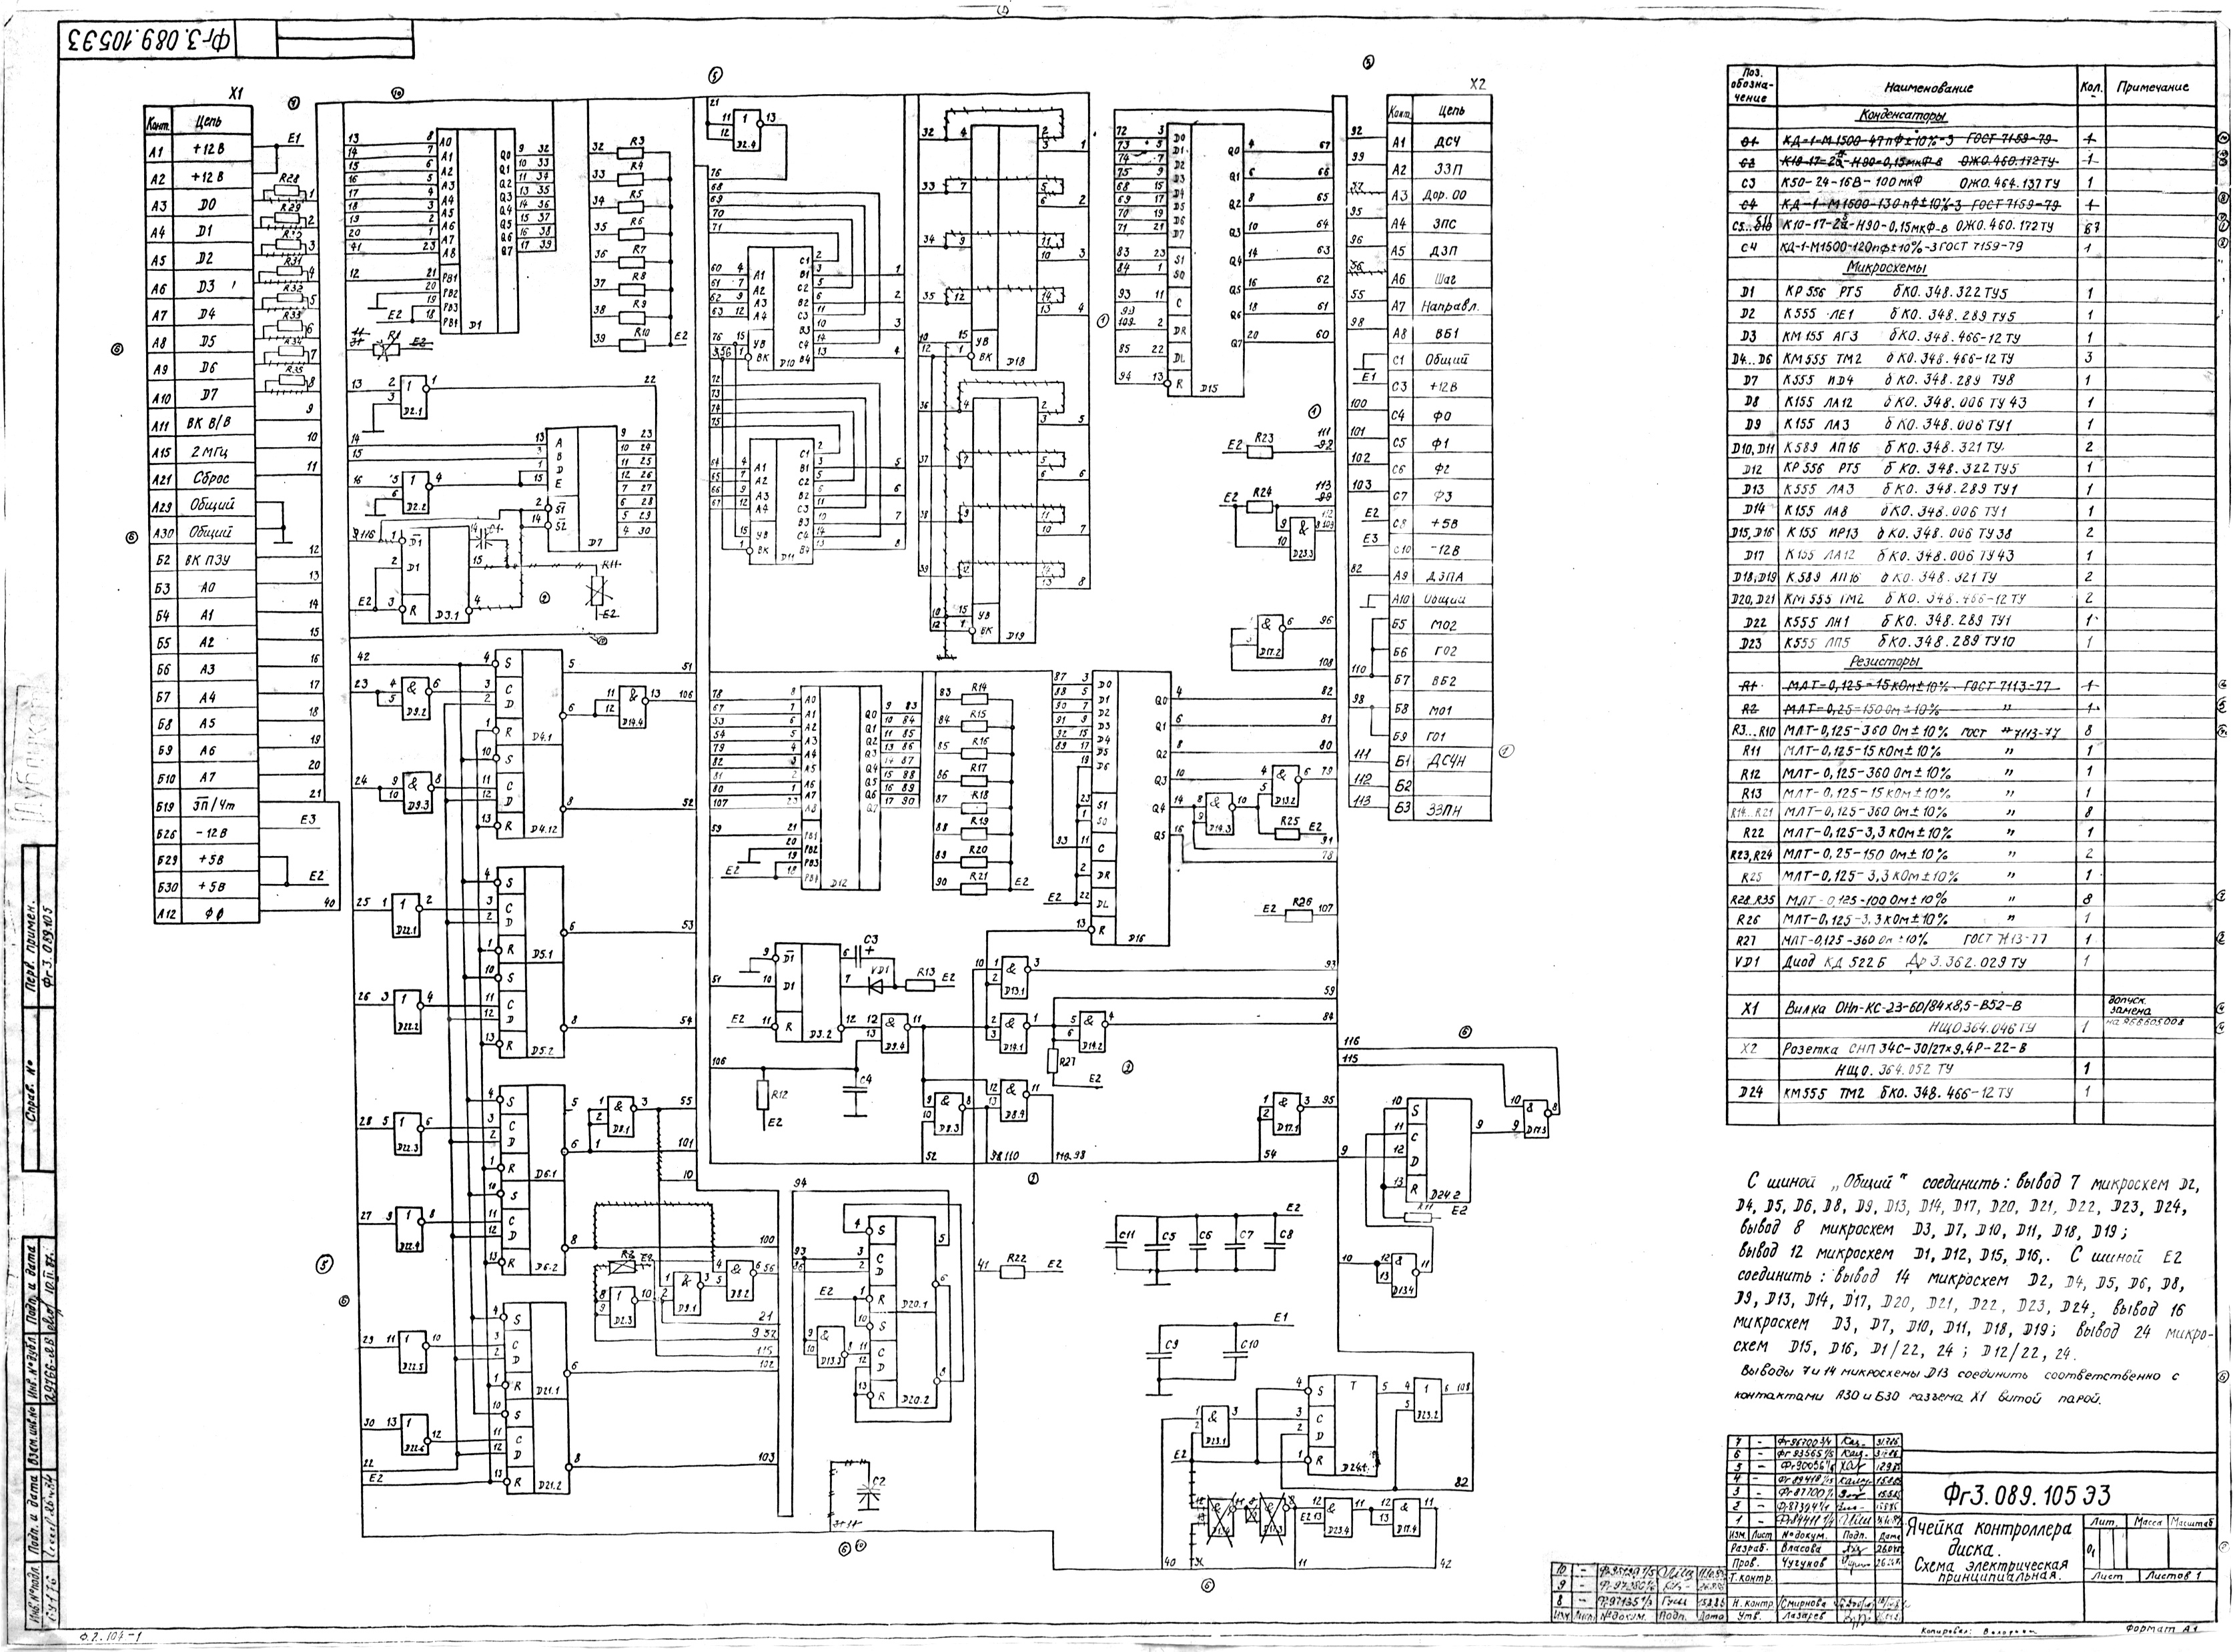 10 Модуль ячейки контроллера 140 кб Фг3.089.105 Э3 VER2.0 (принципиальная электрическая схема).jpg